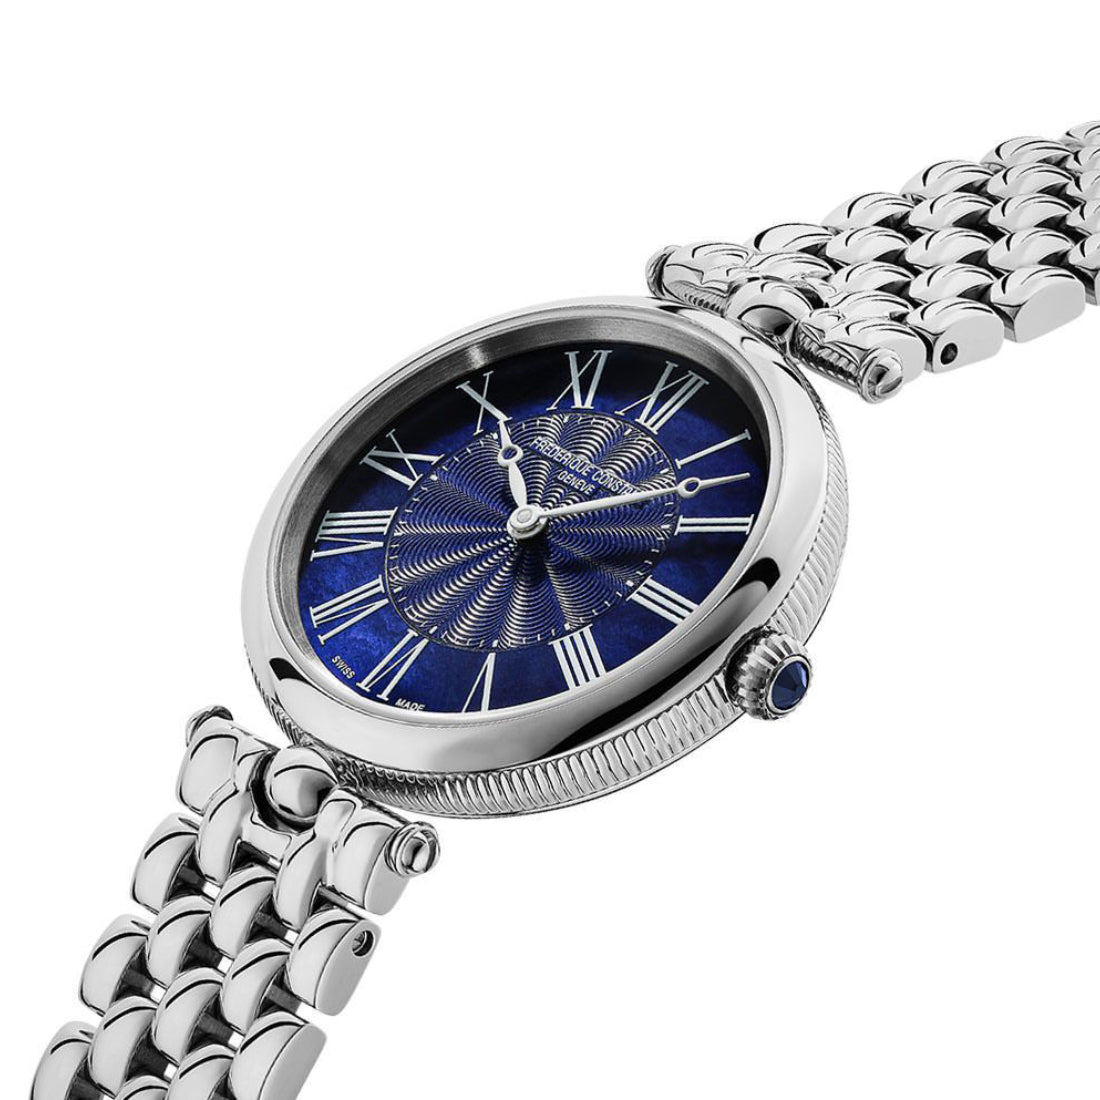 Frederique Constant Women's Quartz Blue Dial Watch - FC-0154